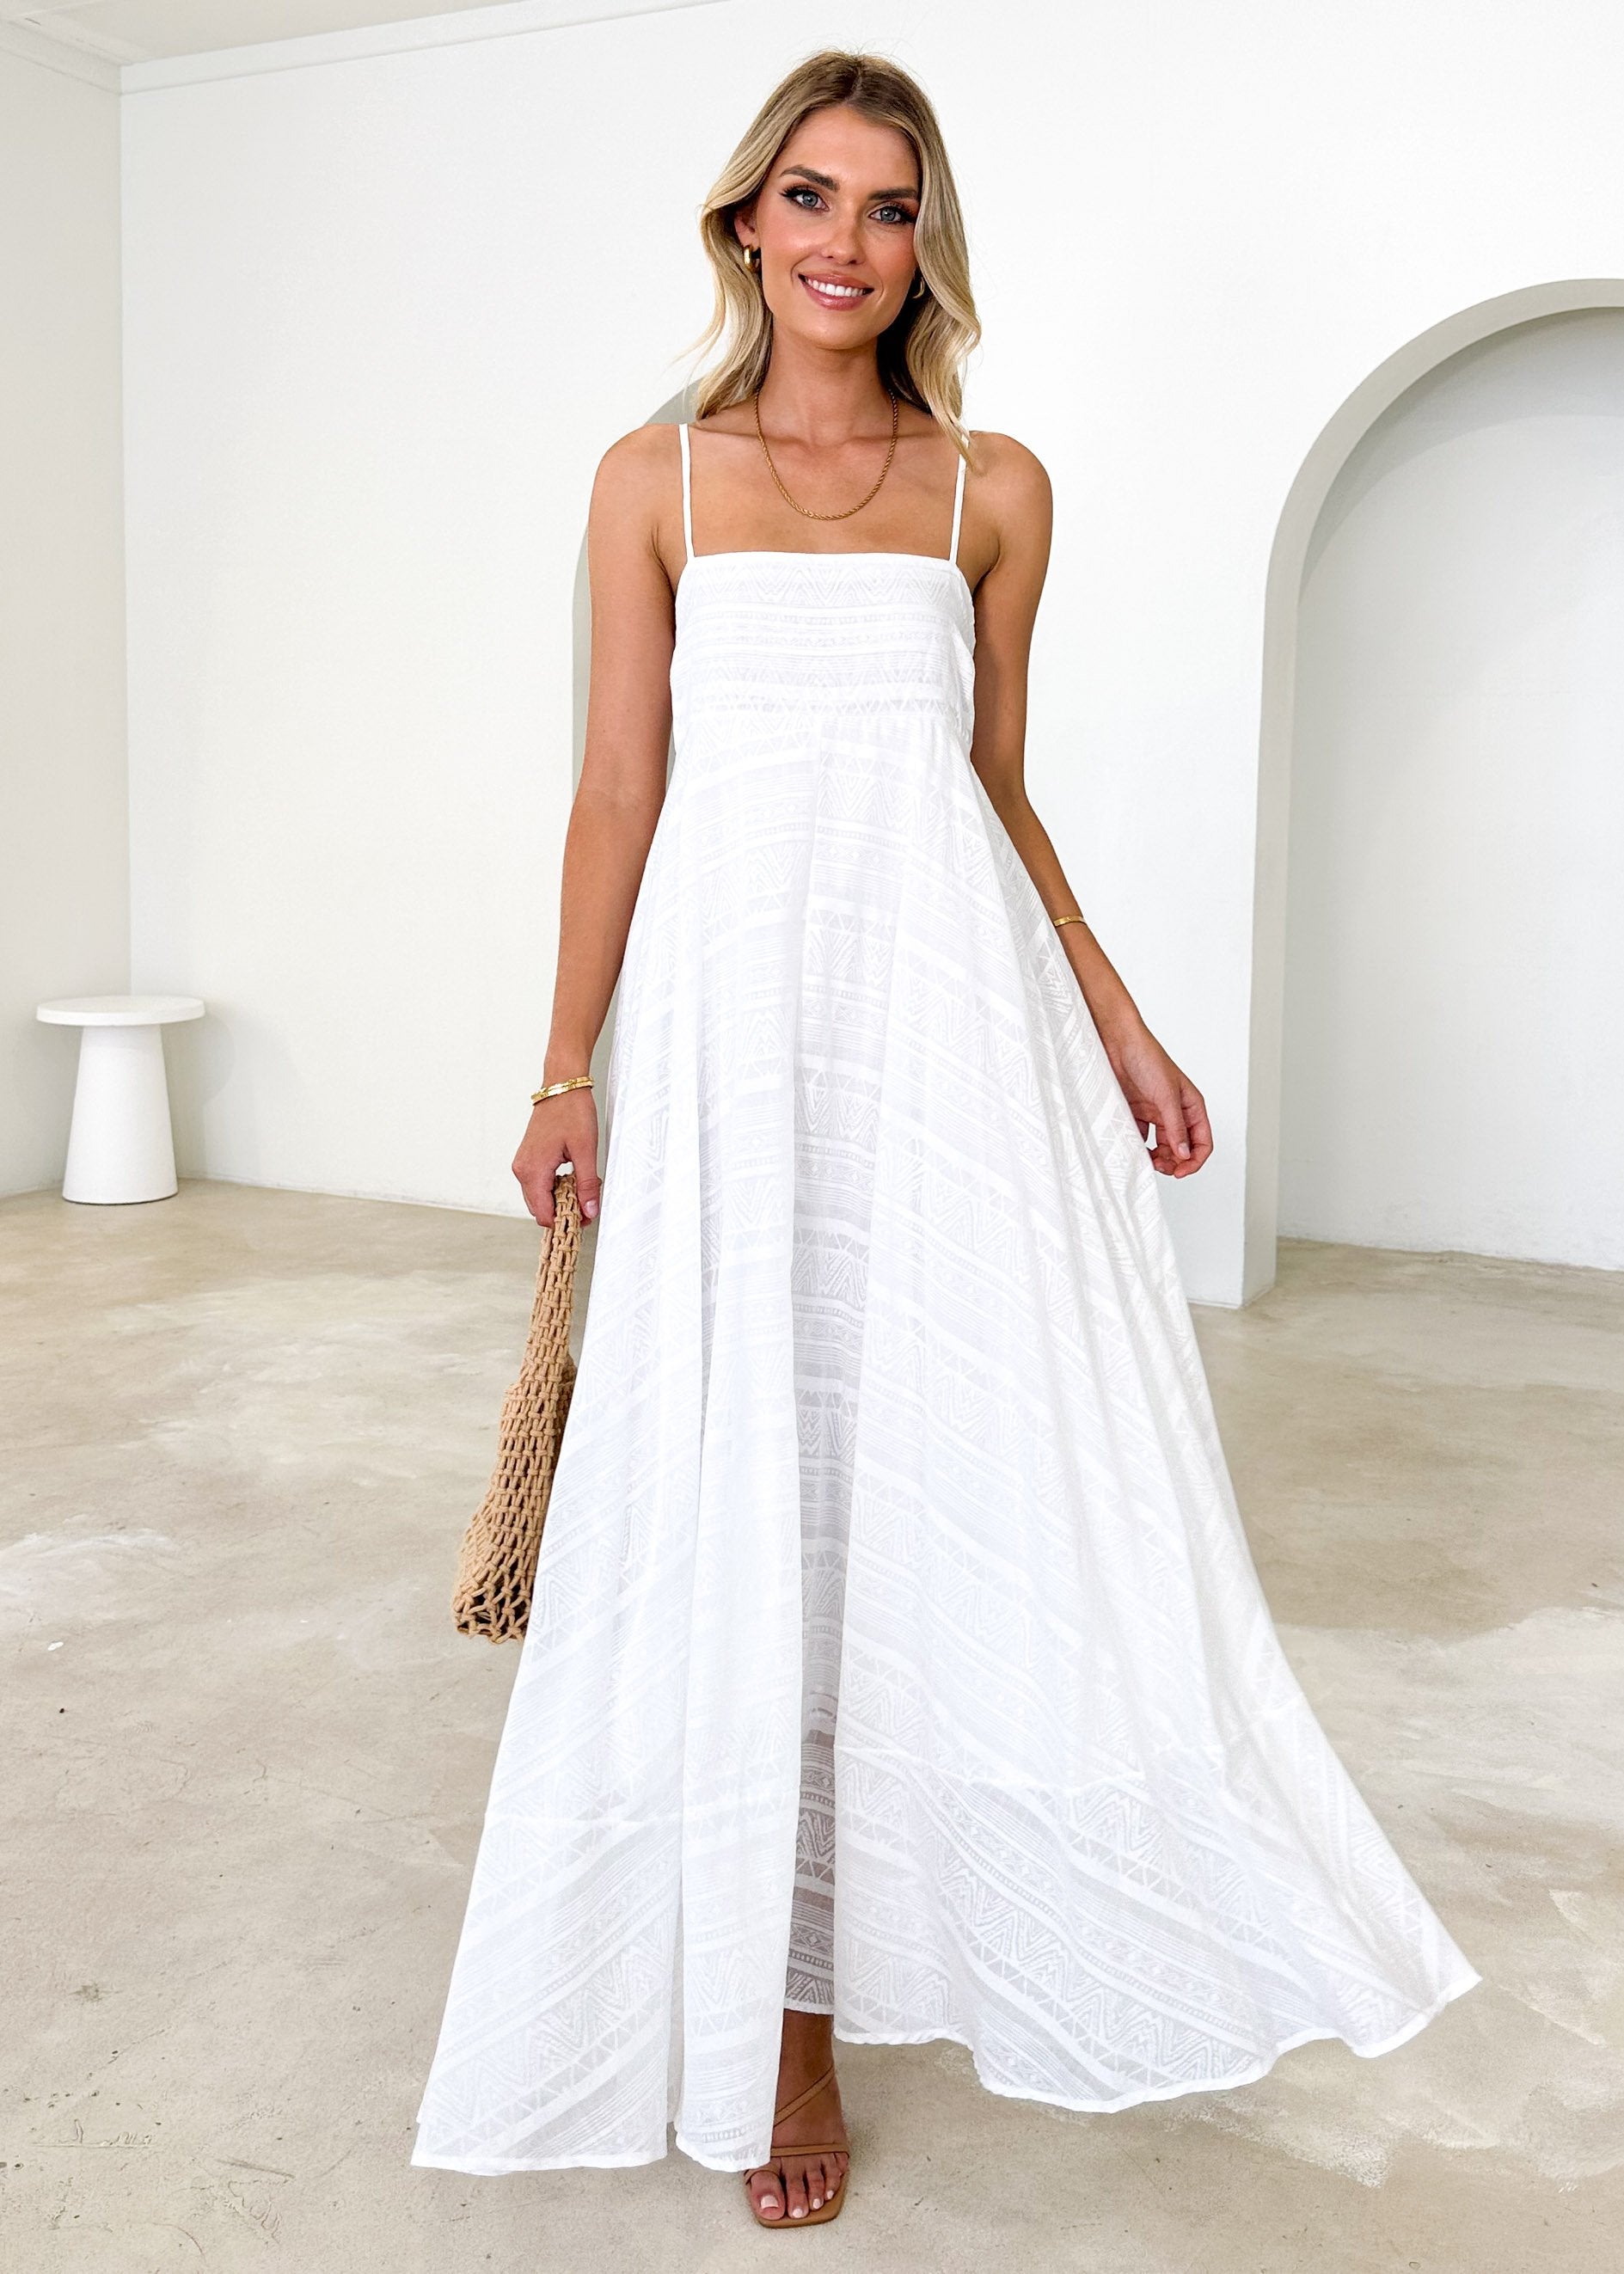 Renta Midi Dress - Off White